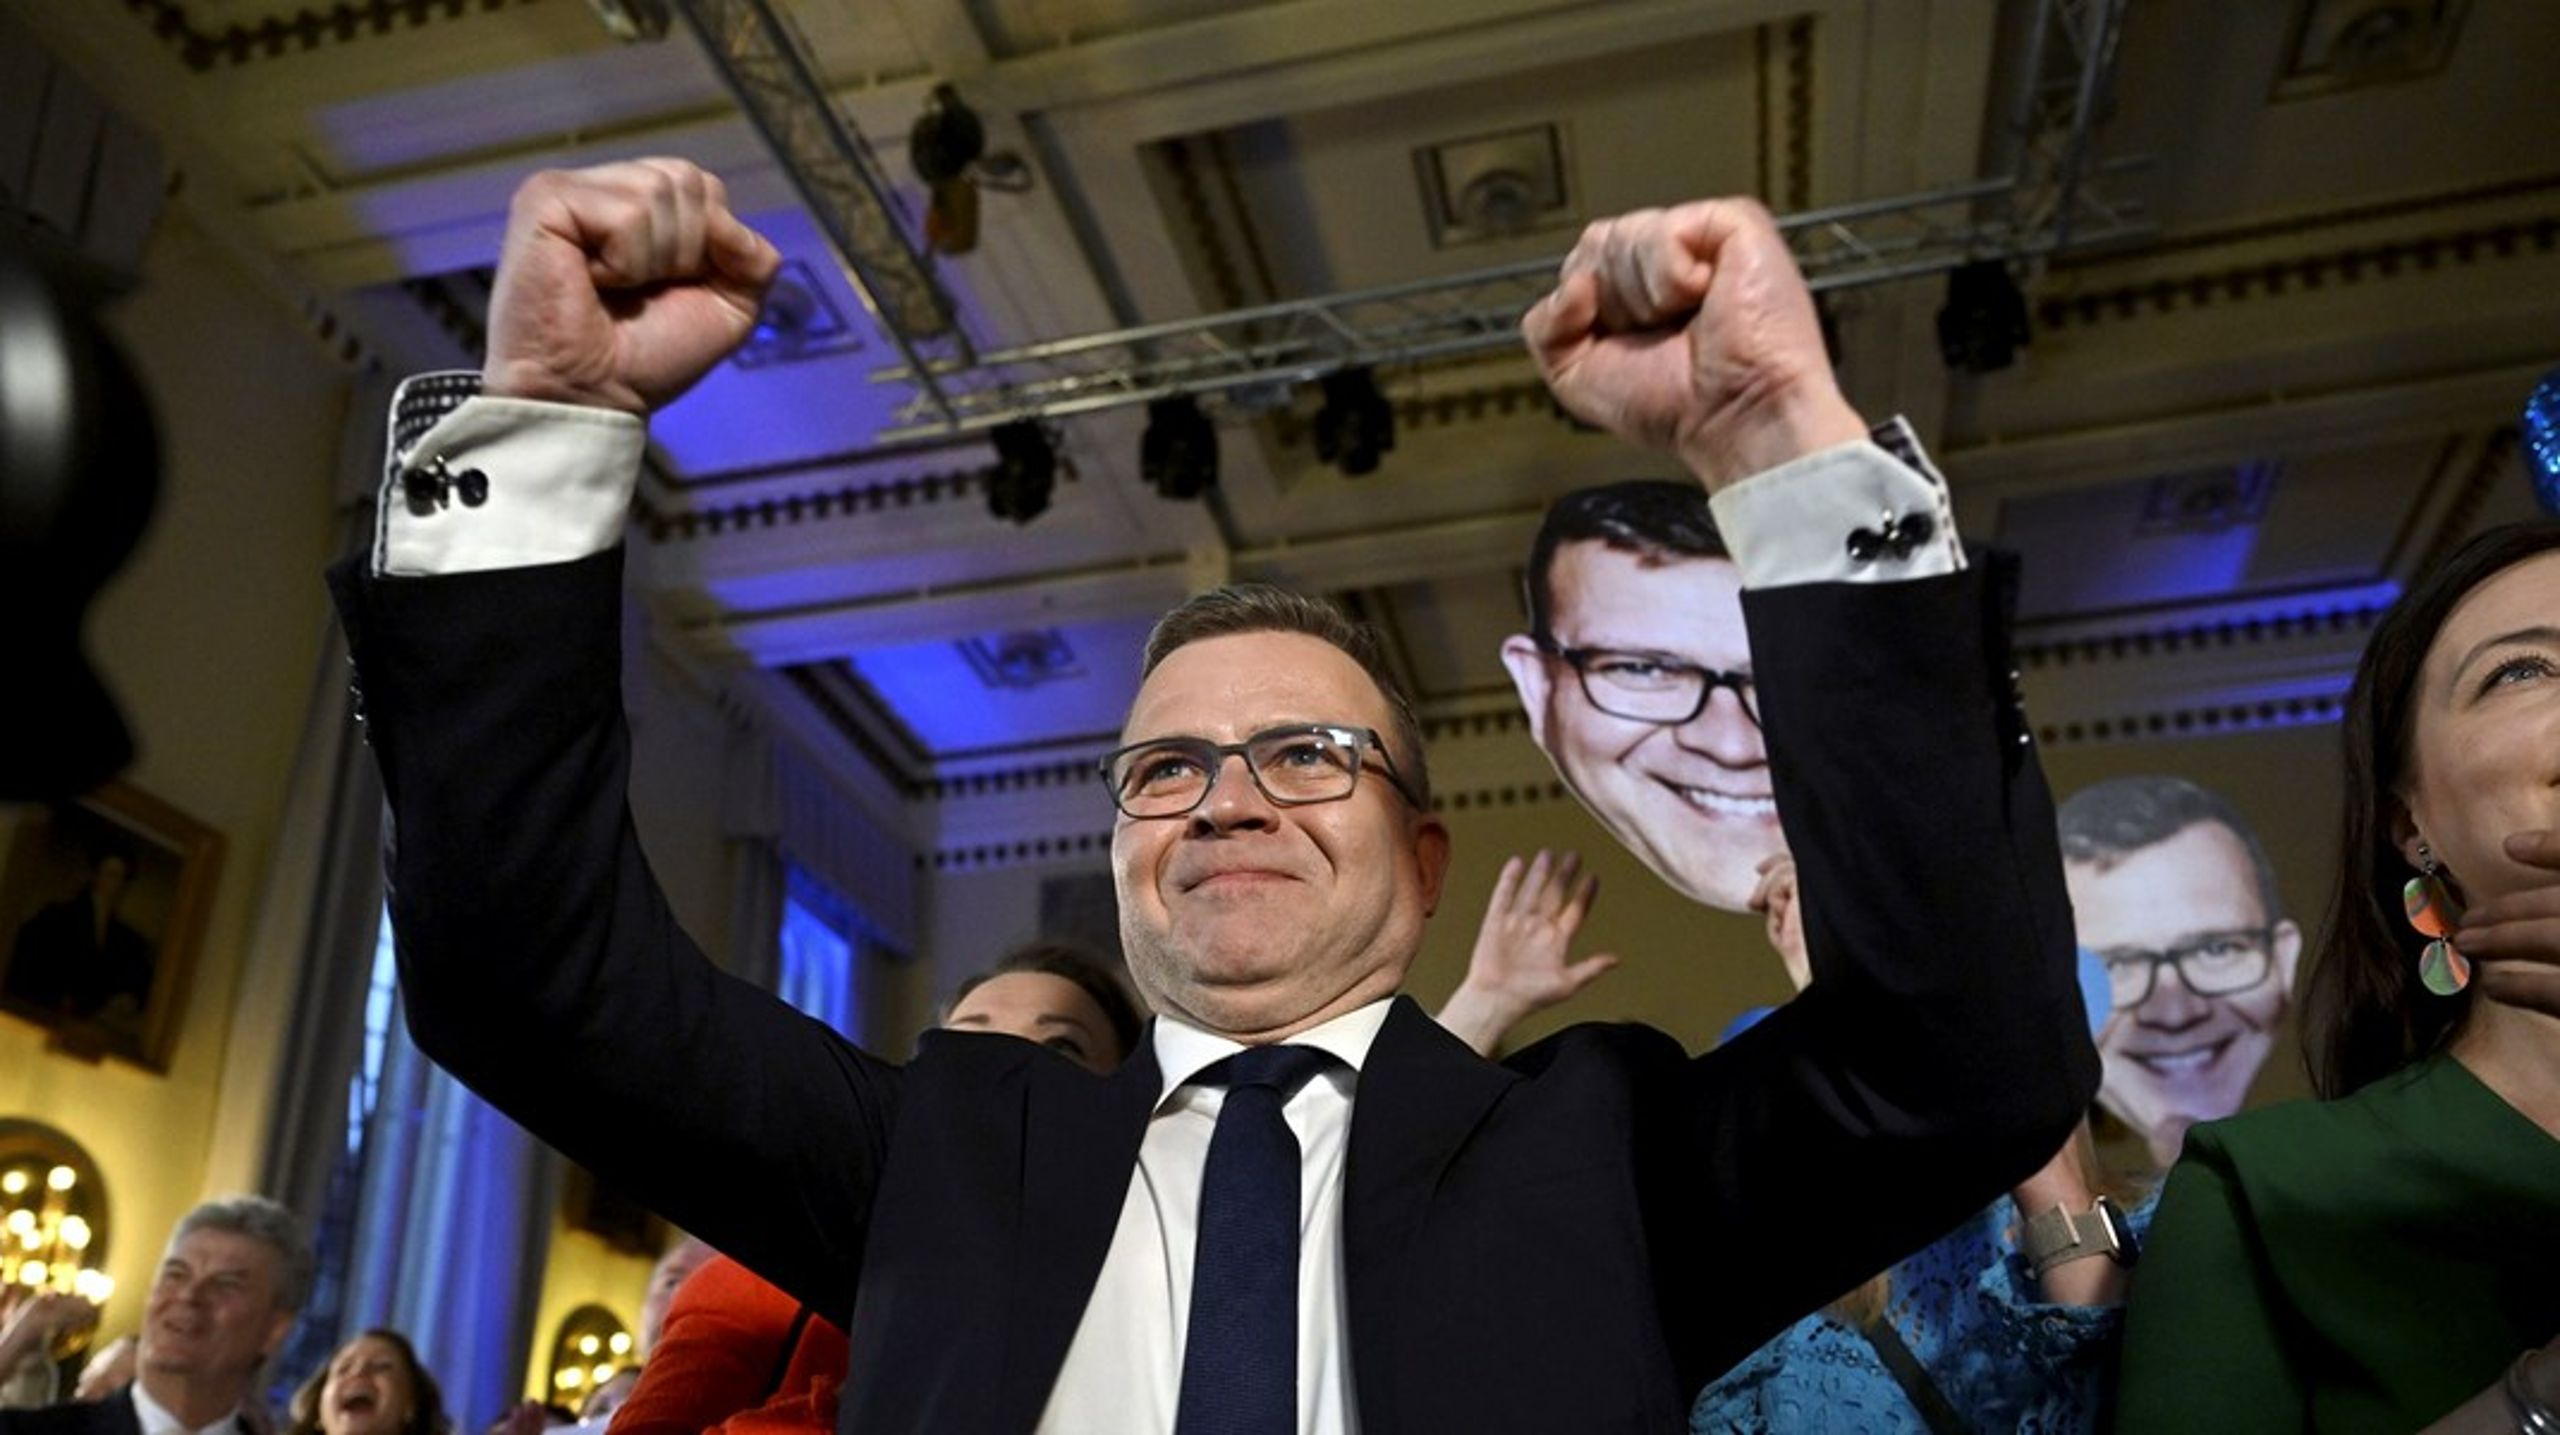 Konservative Petteri Orpo ser ut&nbsp; til å kunne ta plass på Finlands statsministerkontor etter at partiet hans ble størst i søndagens valg. Men først venter vanskelige koalisjonsforhandlinger.&nbsp;&nbsp;